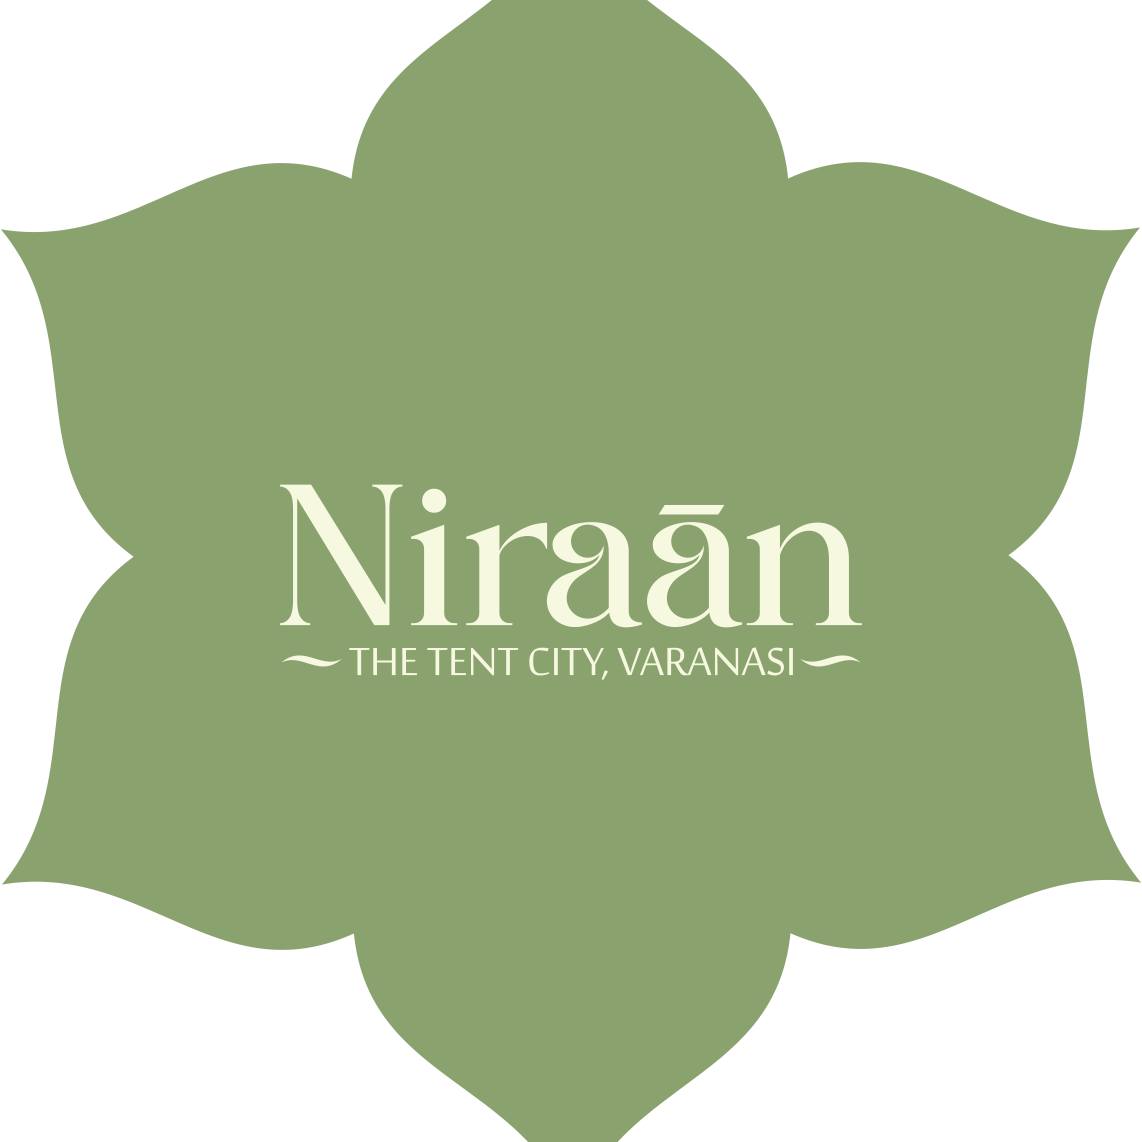 Niraan Tent City, Varanasi|Hotel|Accomodation